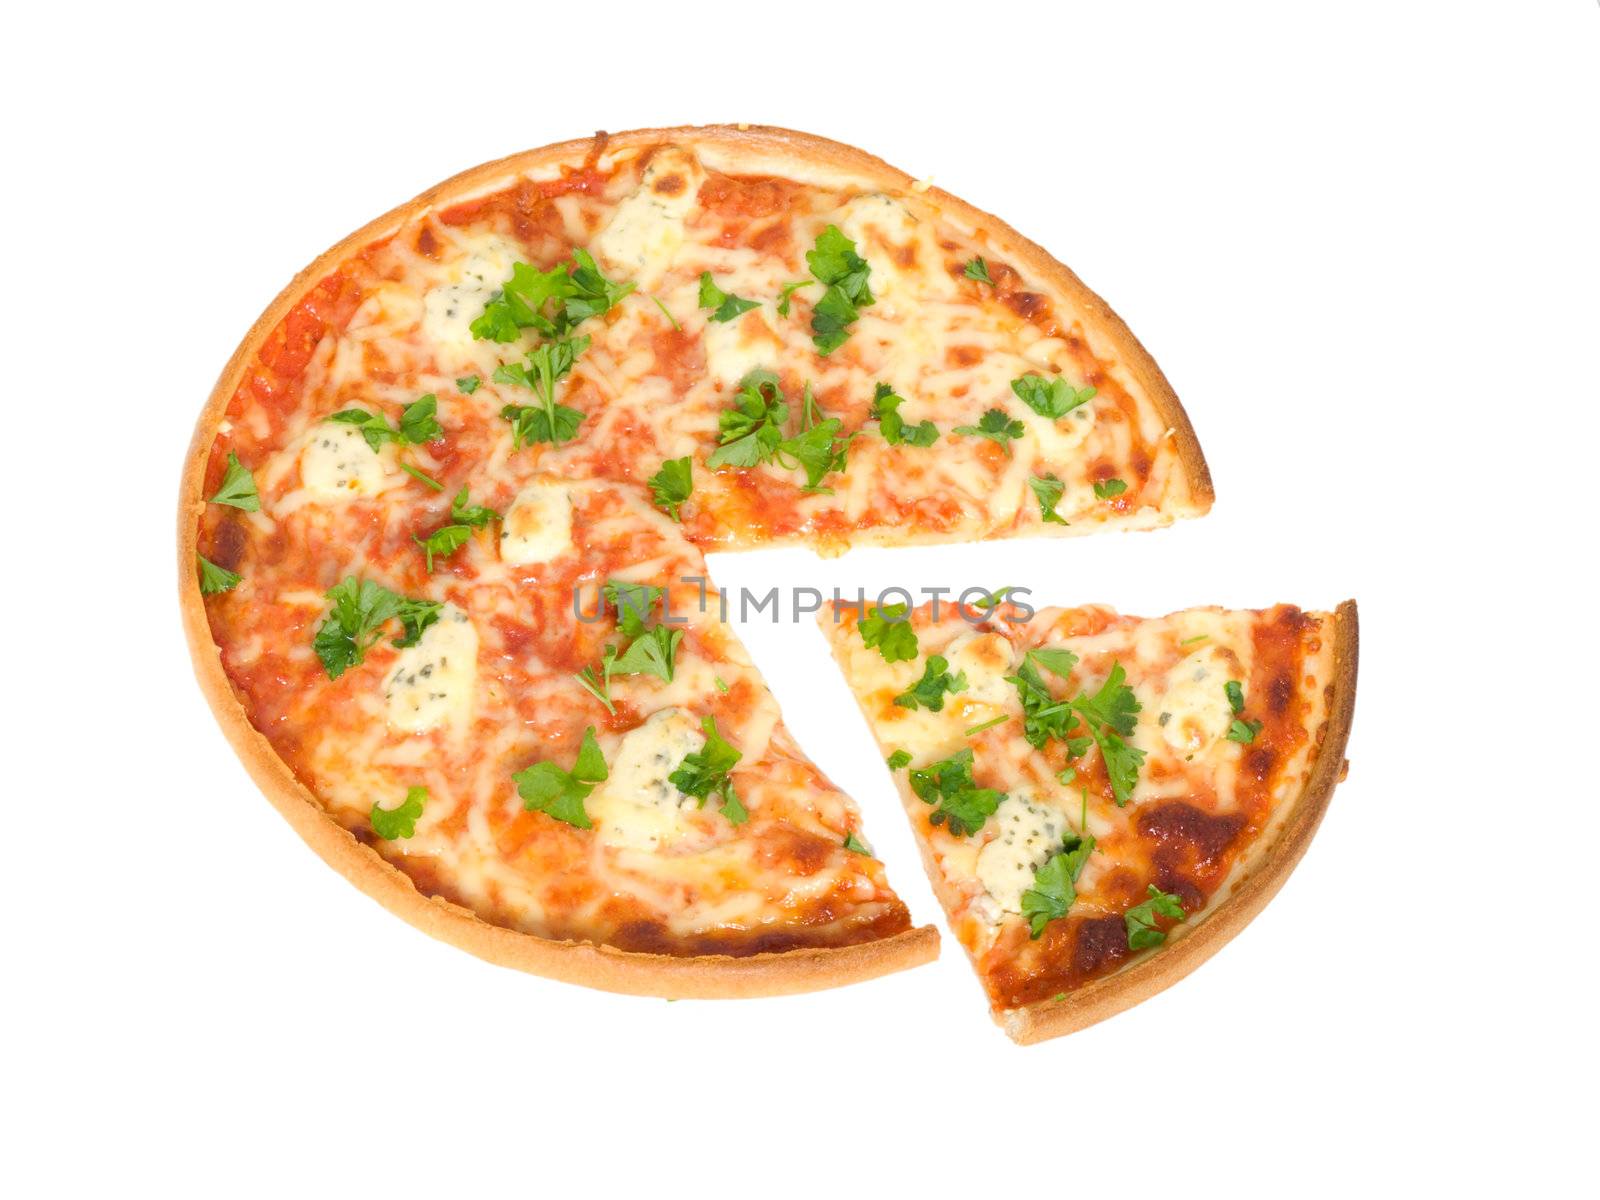  Pizza on white background   by motorolka